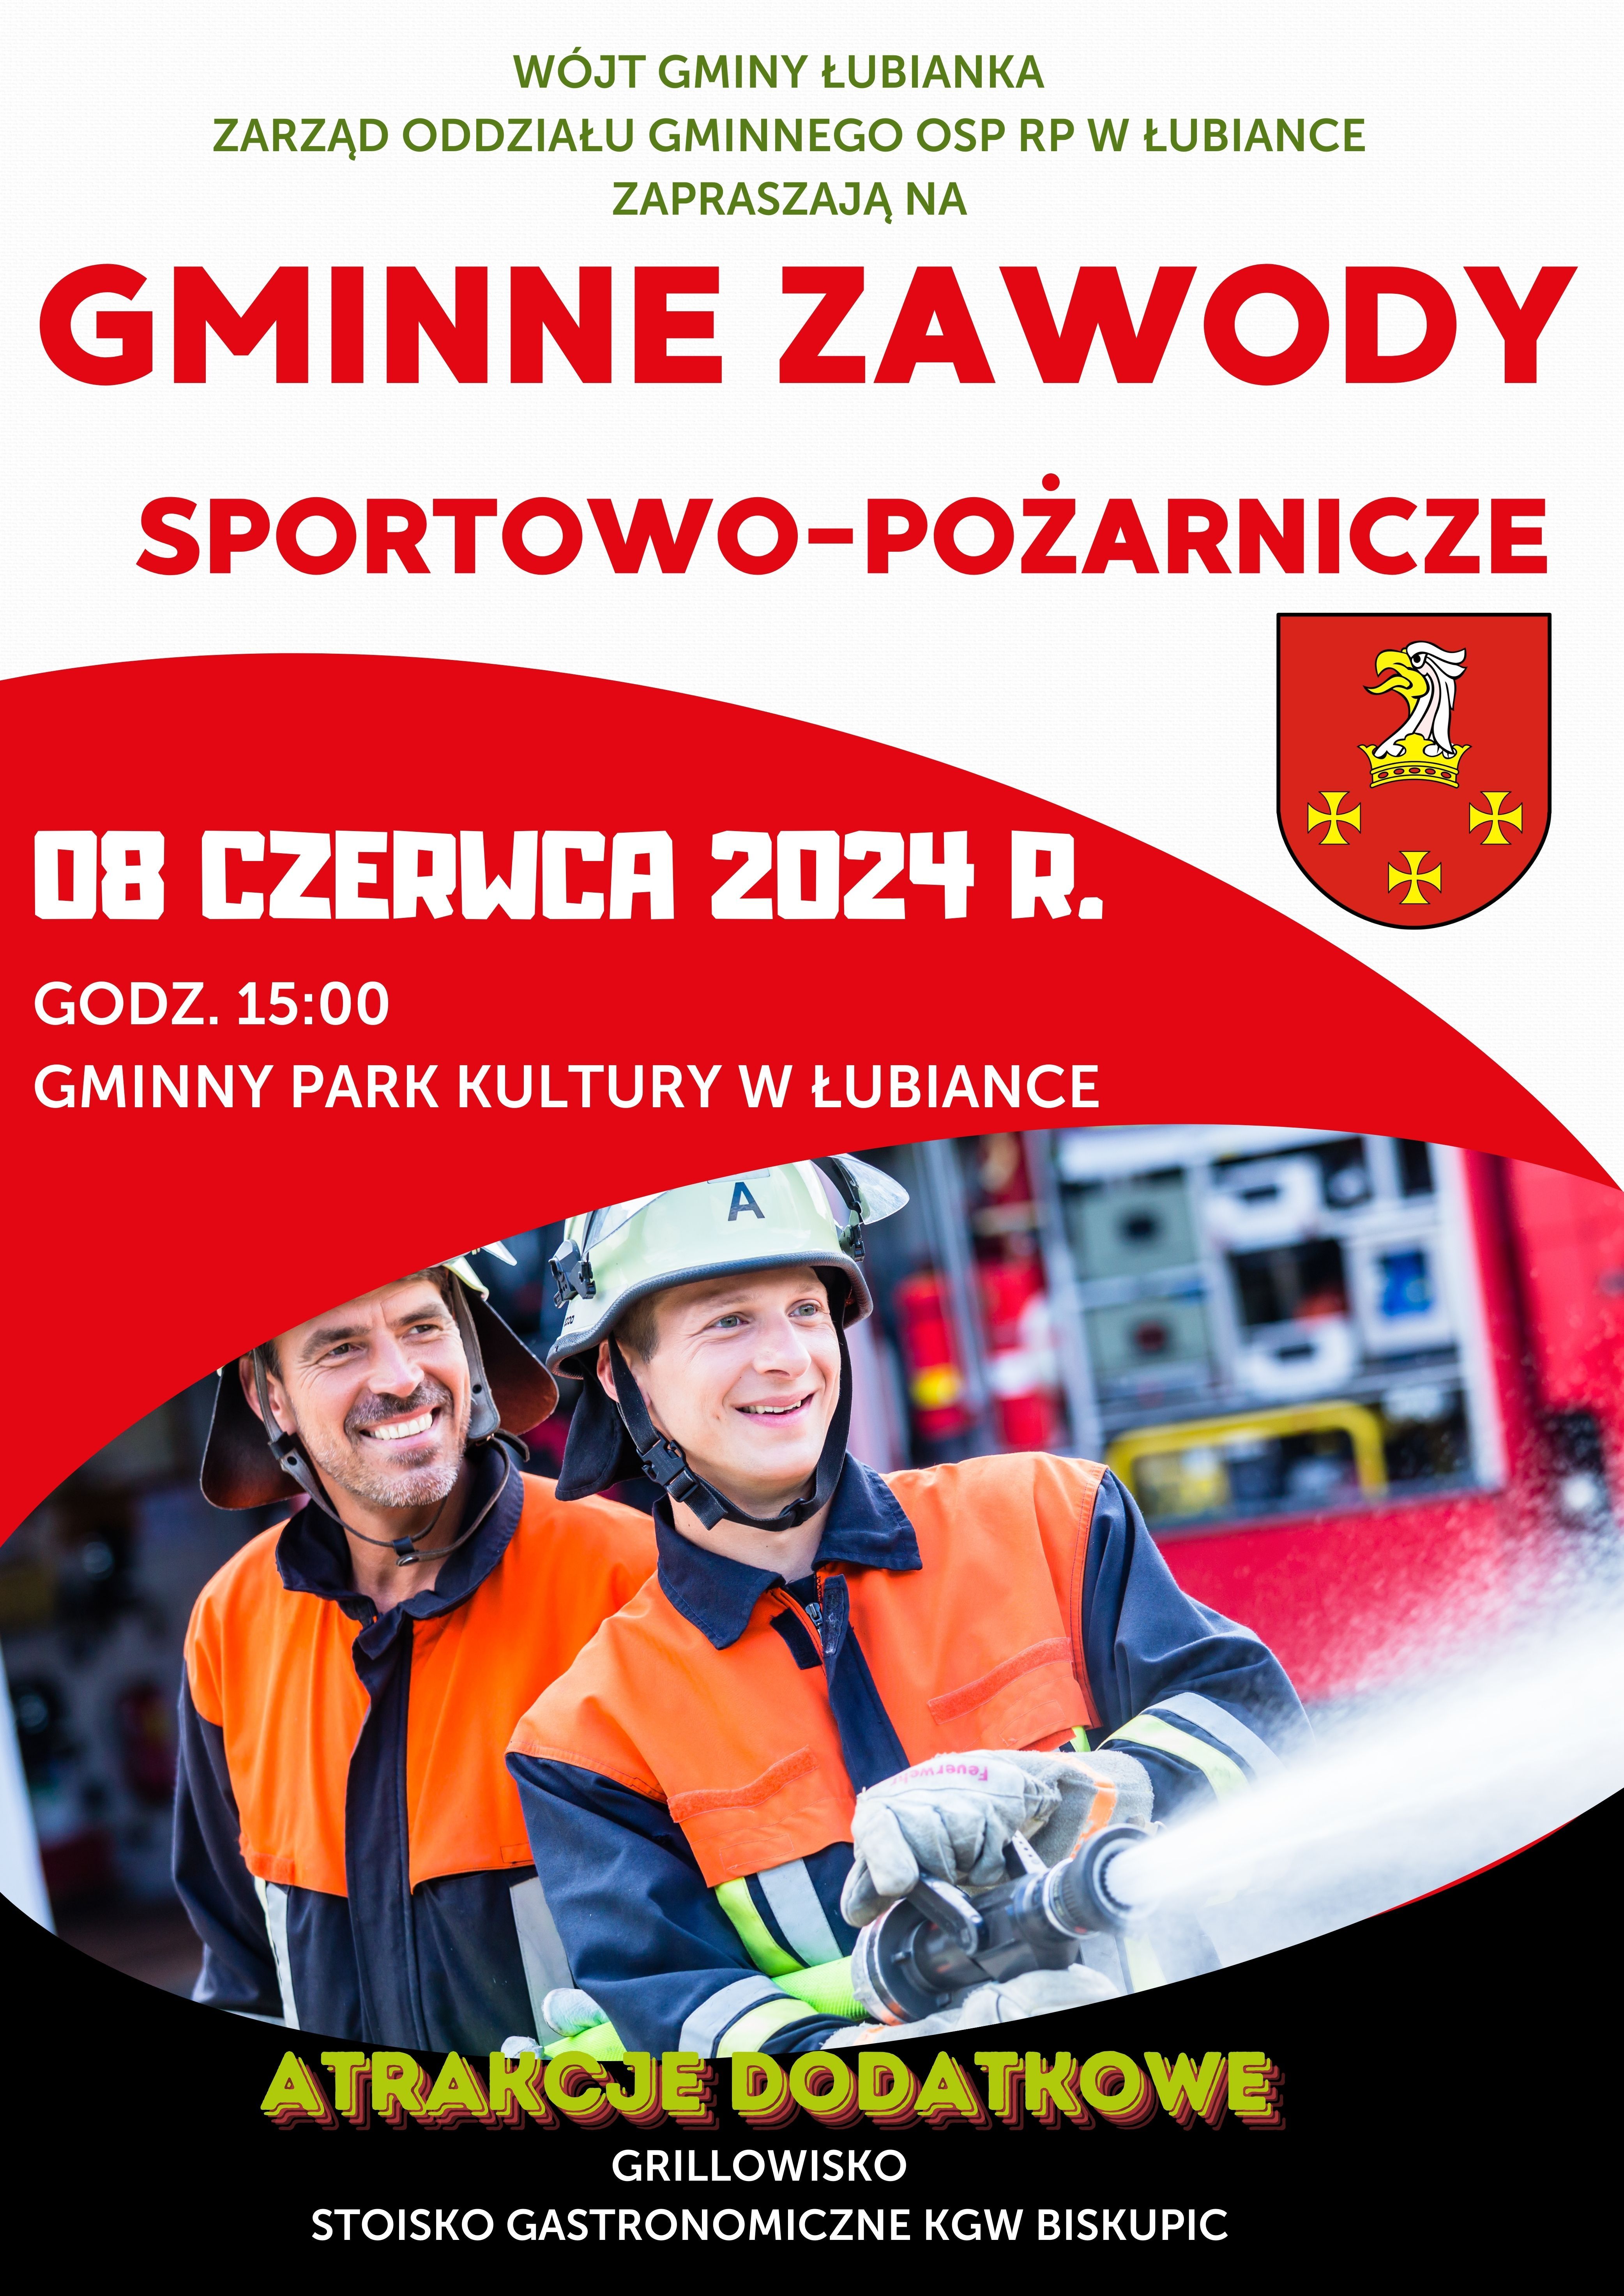 Gminne zawody sportowo - pożarnicze w Łubiance